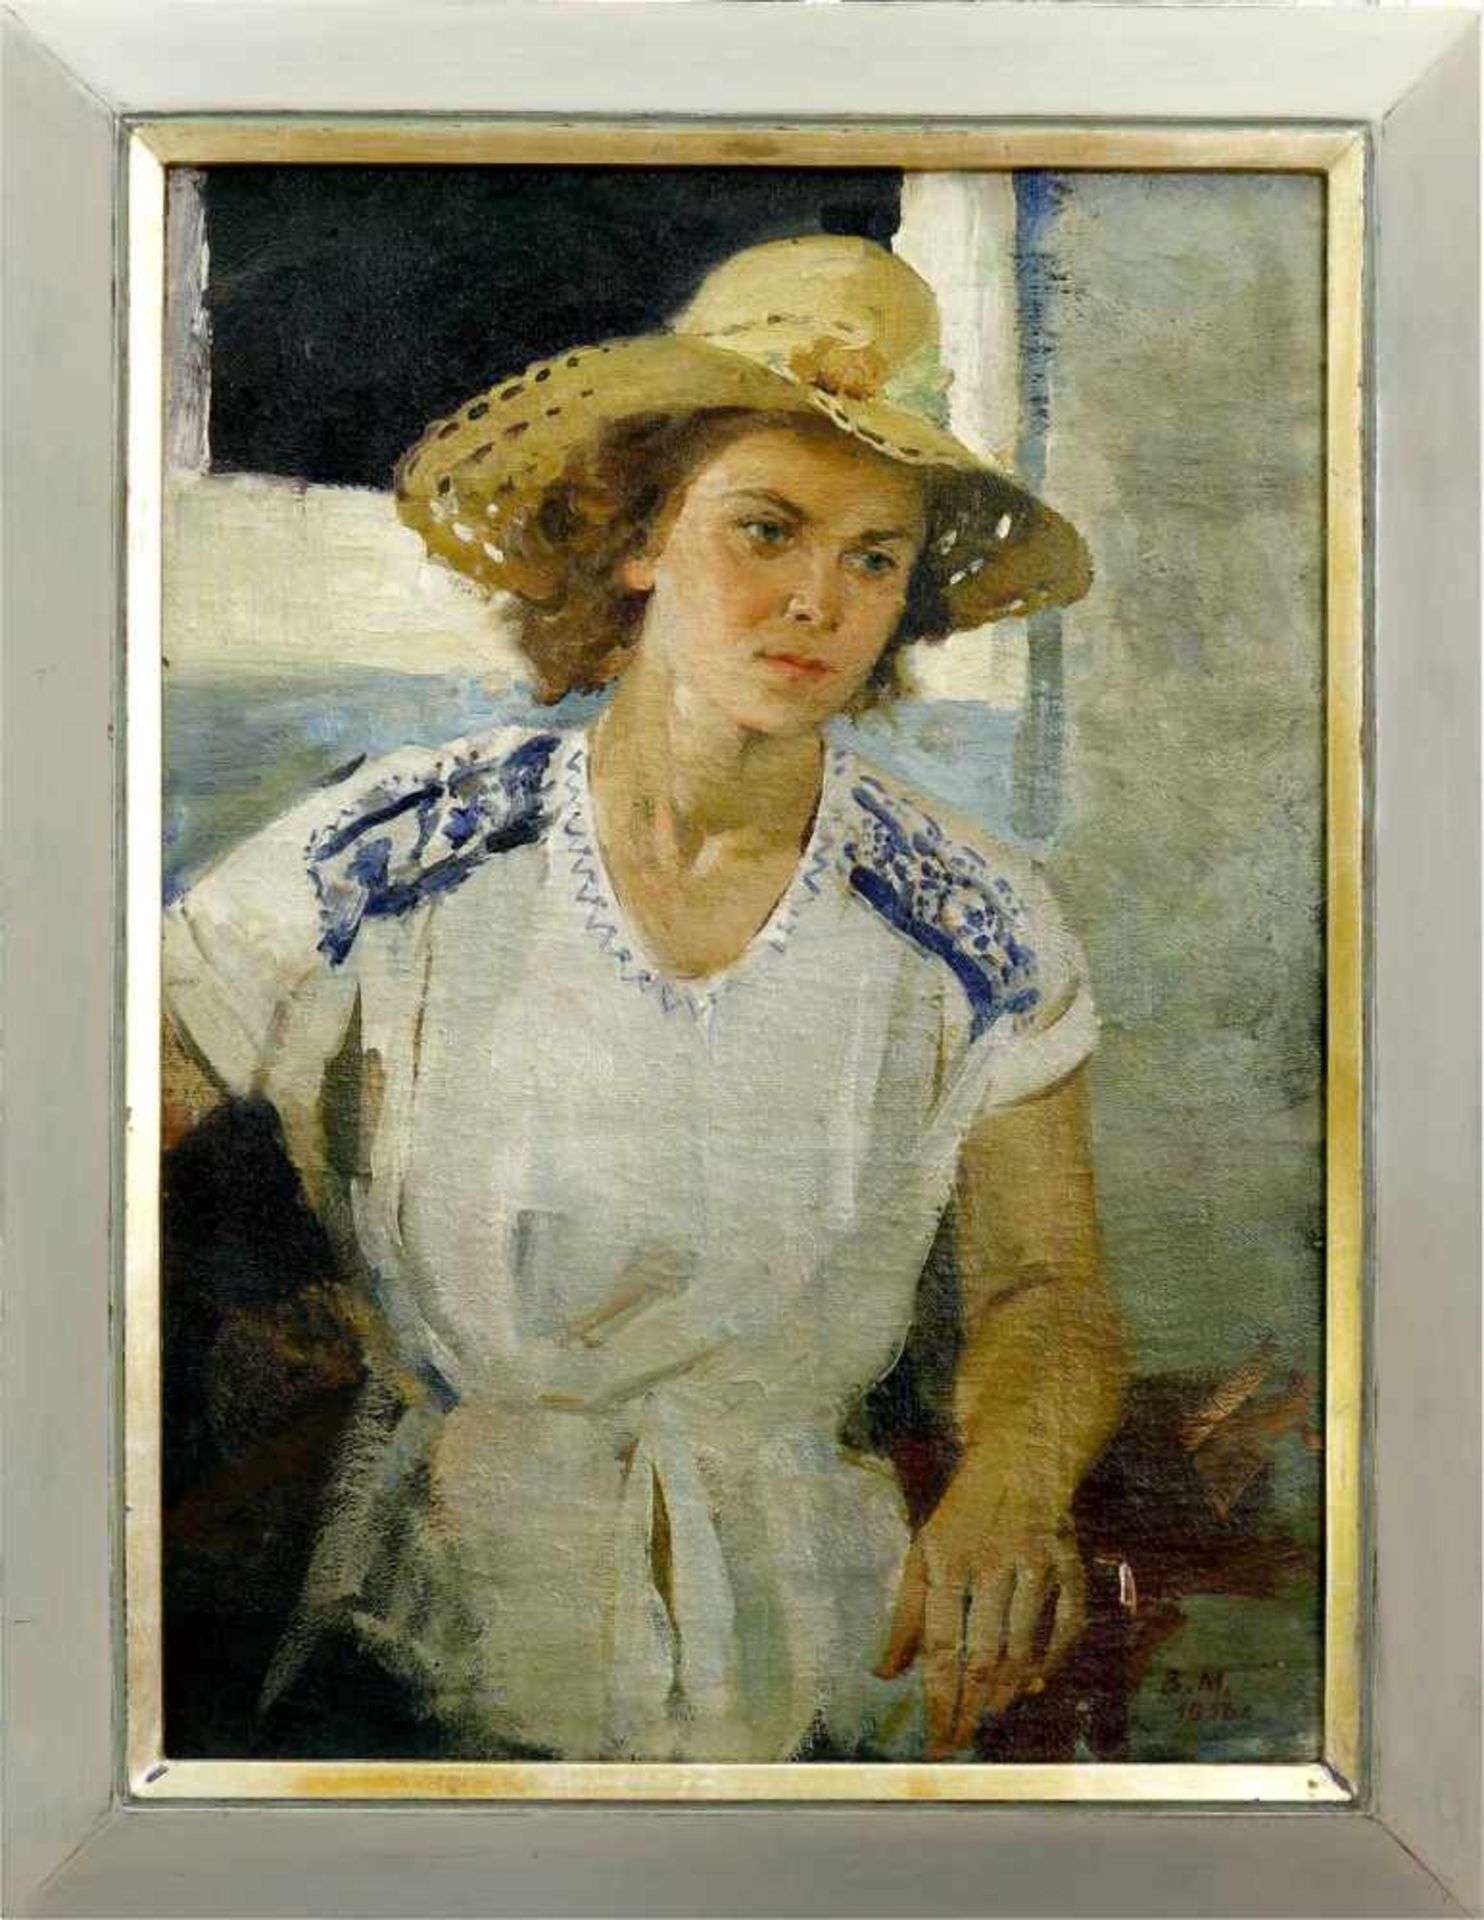 Makatukha, Wassili (1922 Kitajgorod/Ukraine - 2006) Frauenporträt. 1954. Öl auf Leinwand. 87 x 65 - Bild 2 aus 3